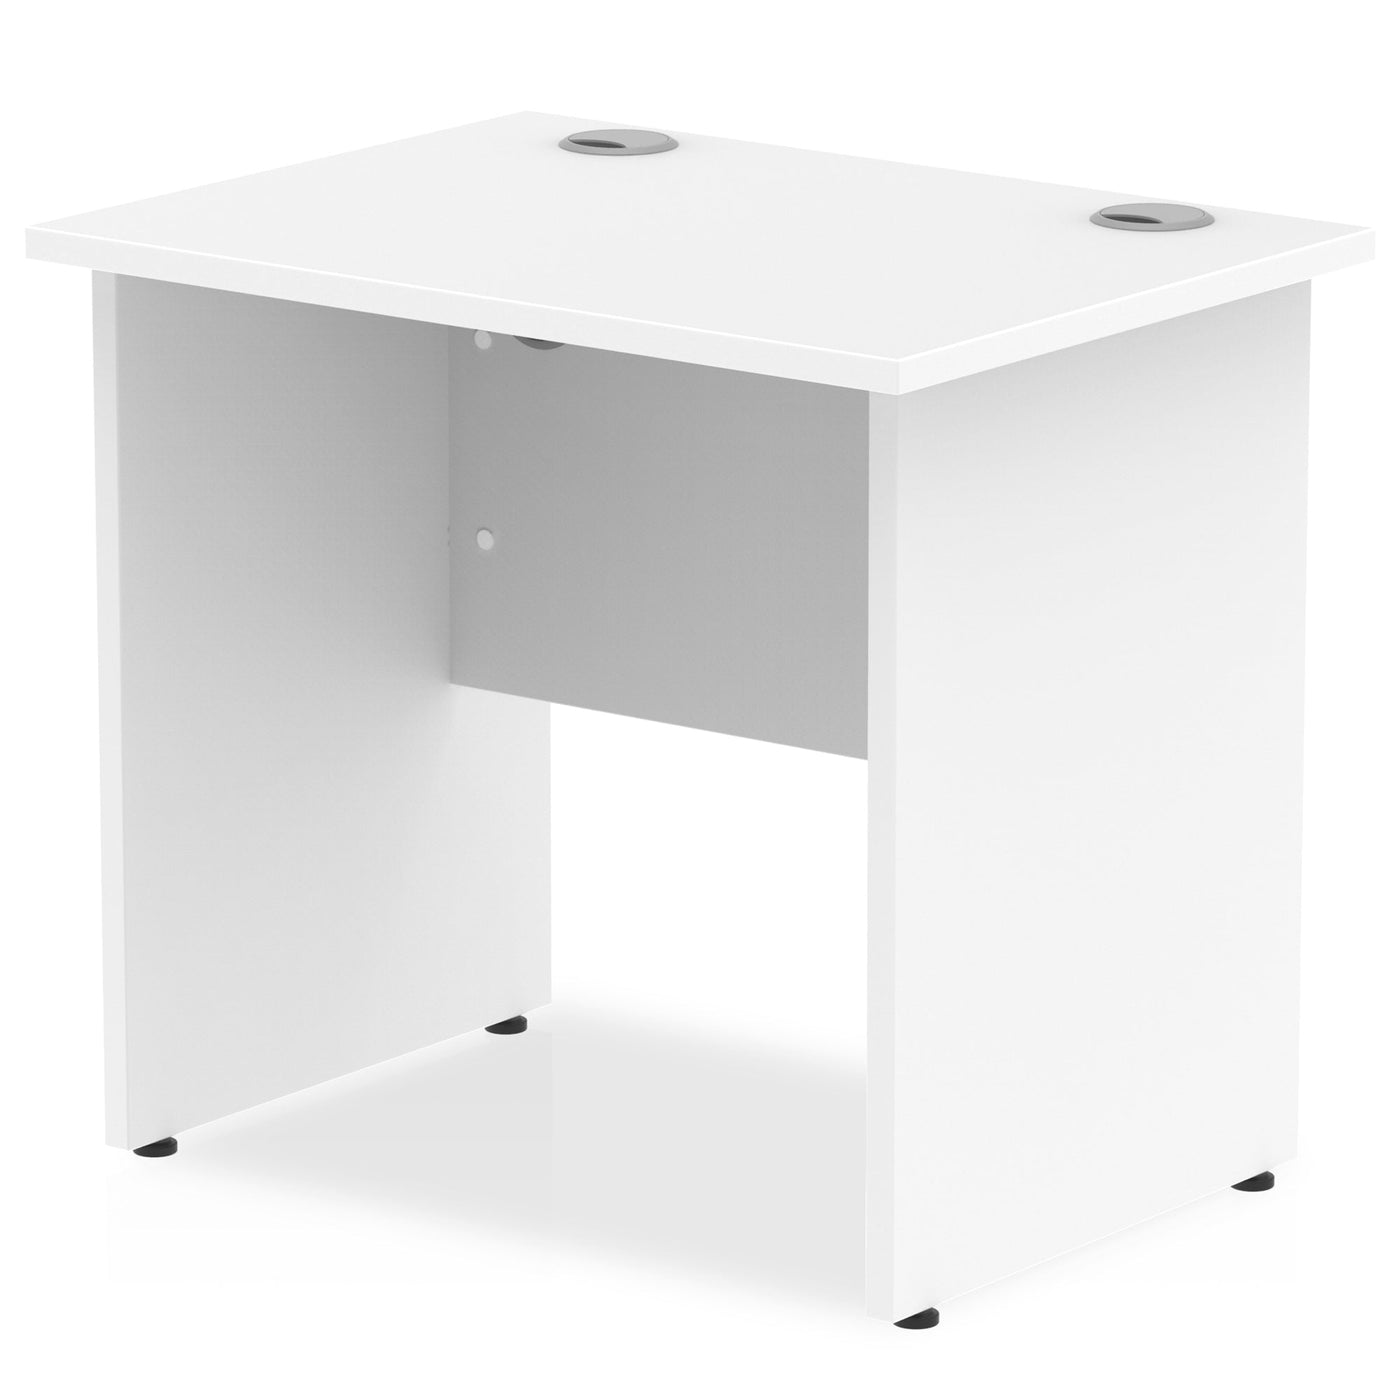 Impulse 800mm Slimline Home Office Desk | Panel End Desk | Home Office Furniture | Homework Desk | Work From Home Desk | Wooden Desk